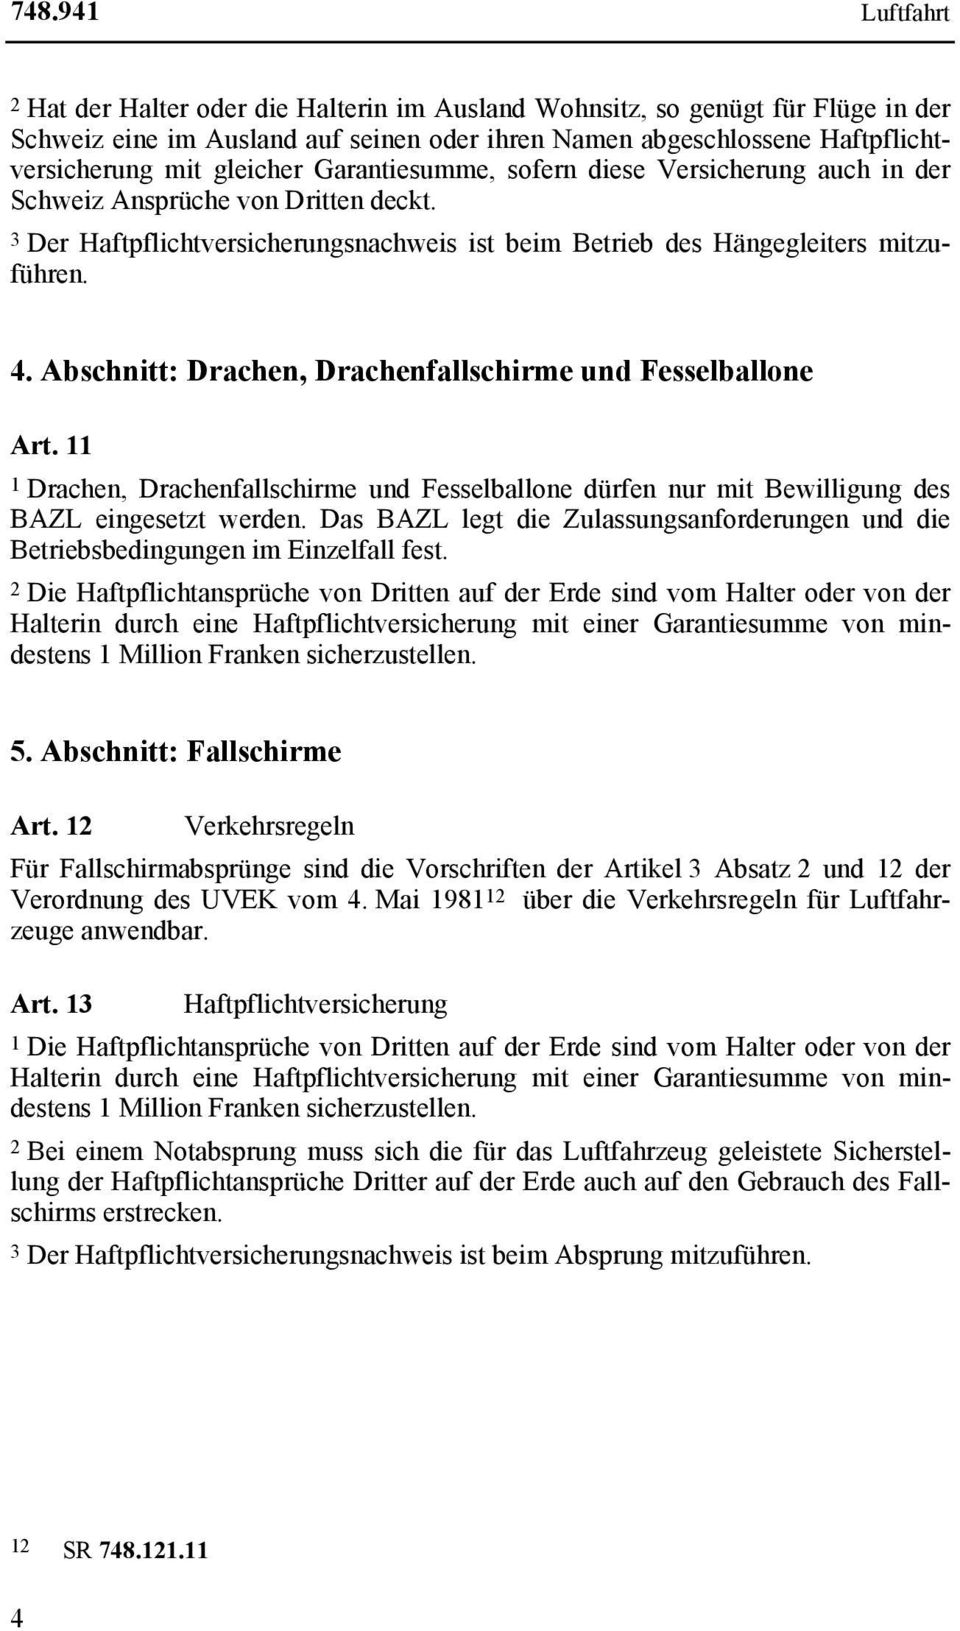 Abschnitt: Drachen, Drachenfallschirme und Fesselballone Art. 11 1 Drachen, Drachenfallschirme und Fesselballone dürfen nur mit Bewilligung des BAZL eingesetzt werden.